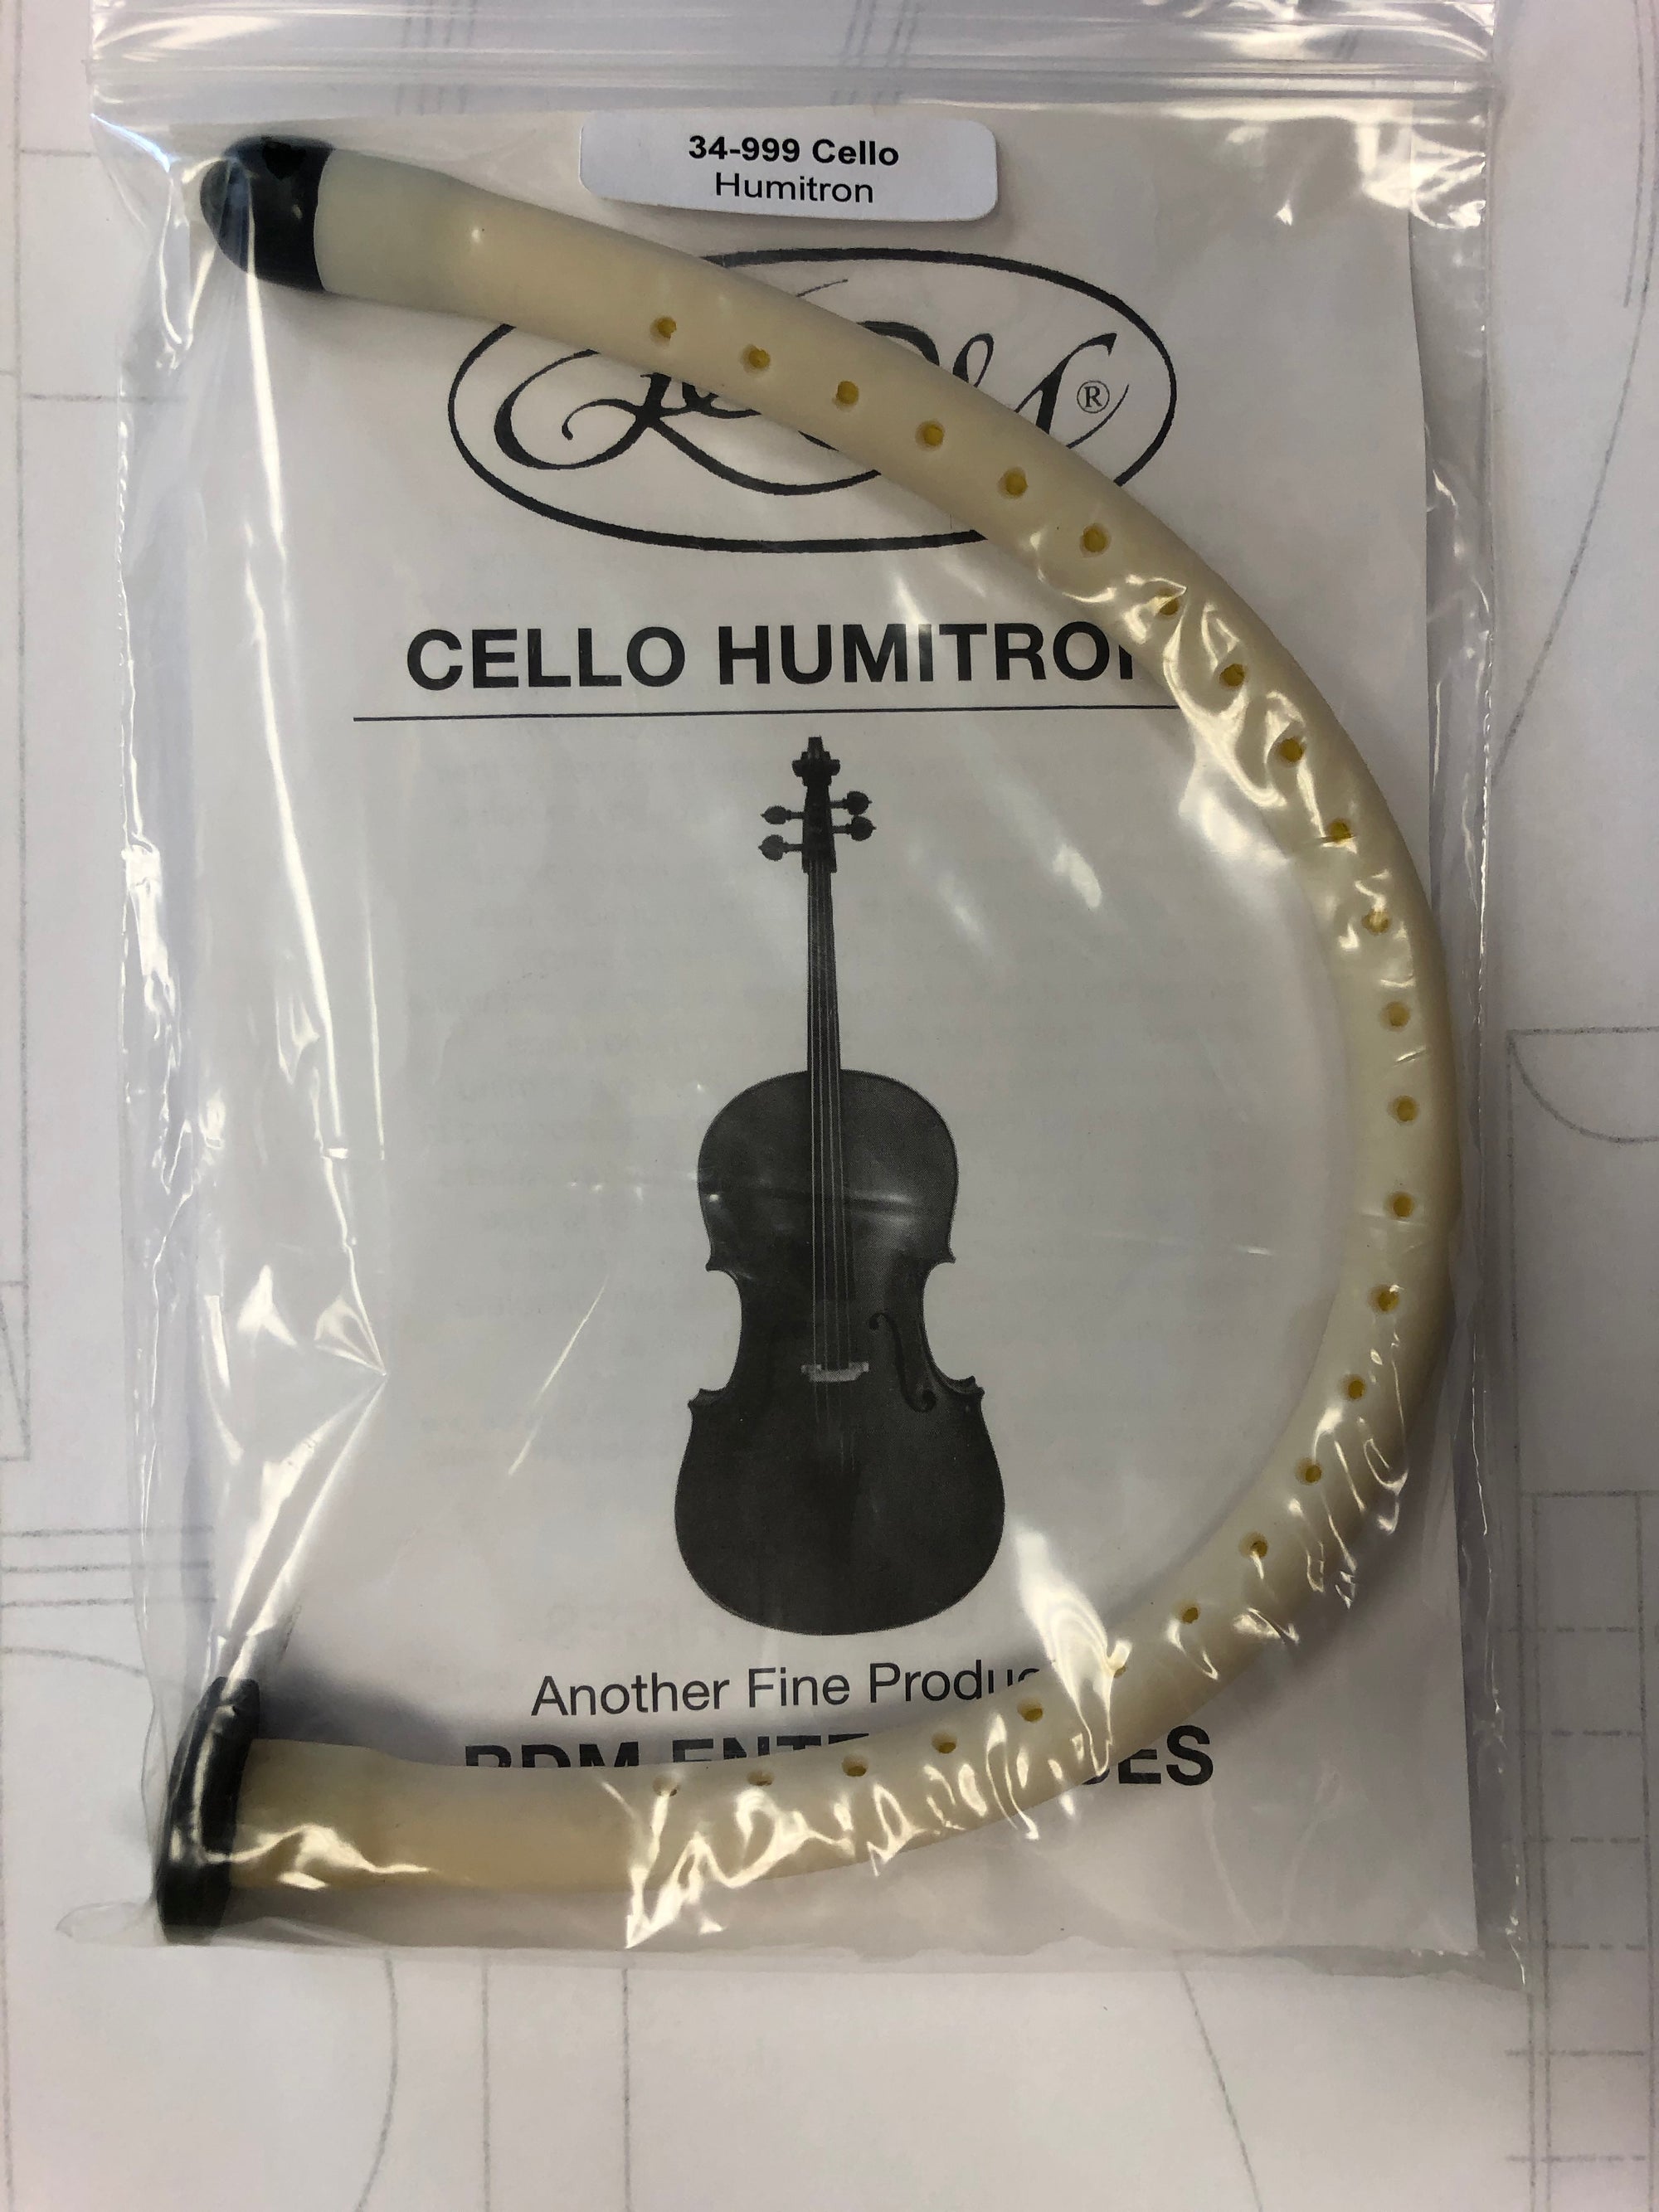 Humitron Cello Humidifier